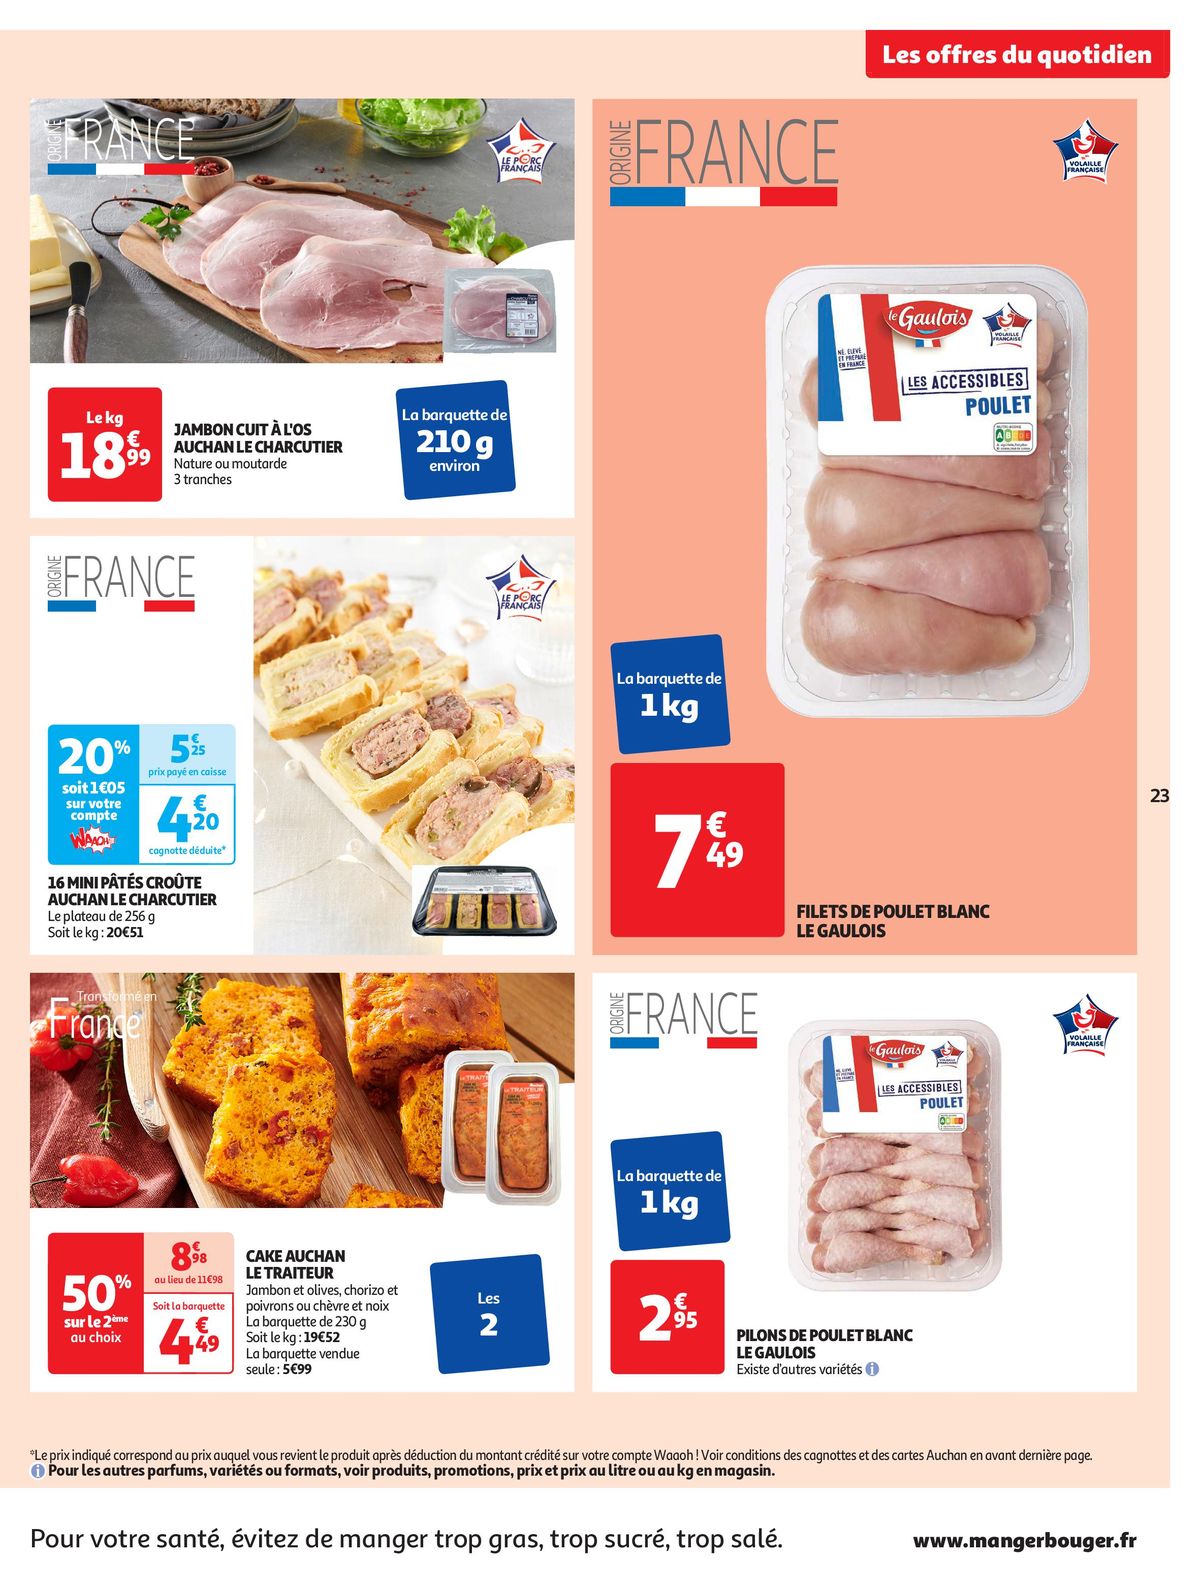 Catalogue Format XXL à prix XXS dans votre supermarché, page 00023